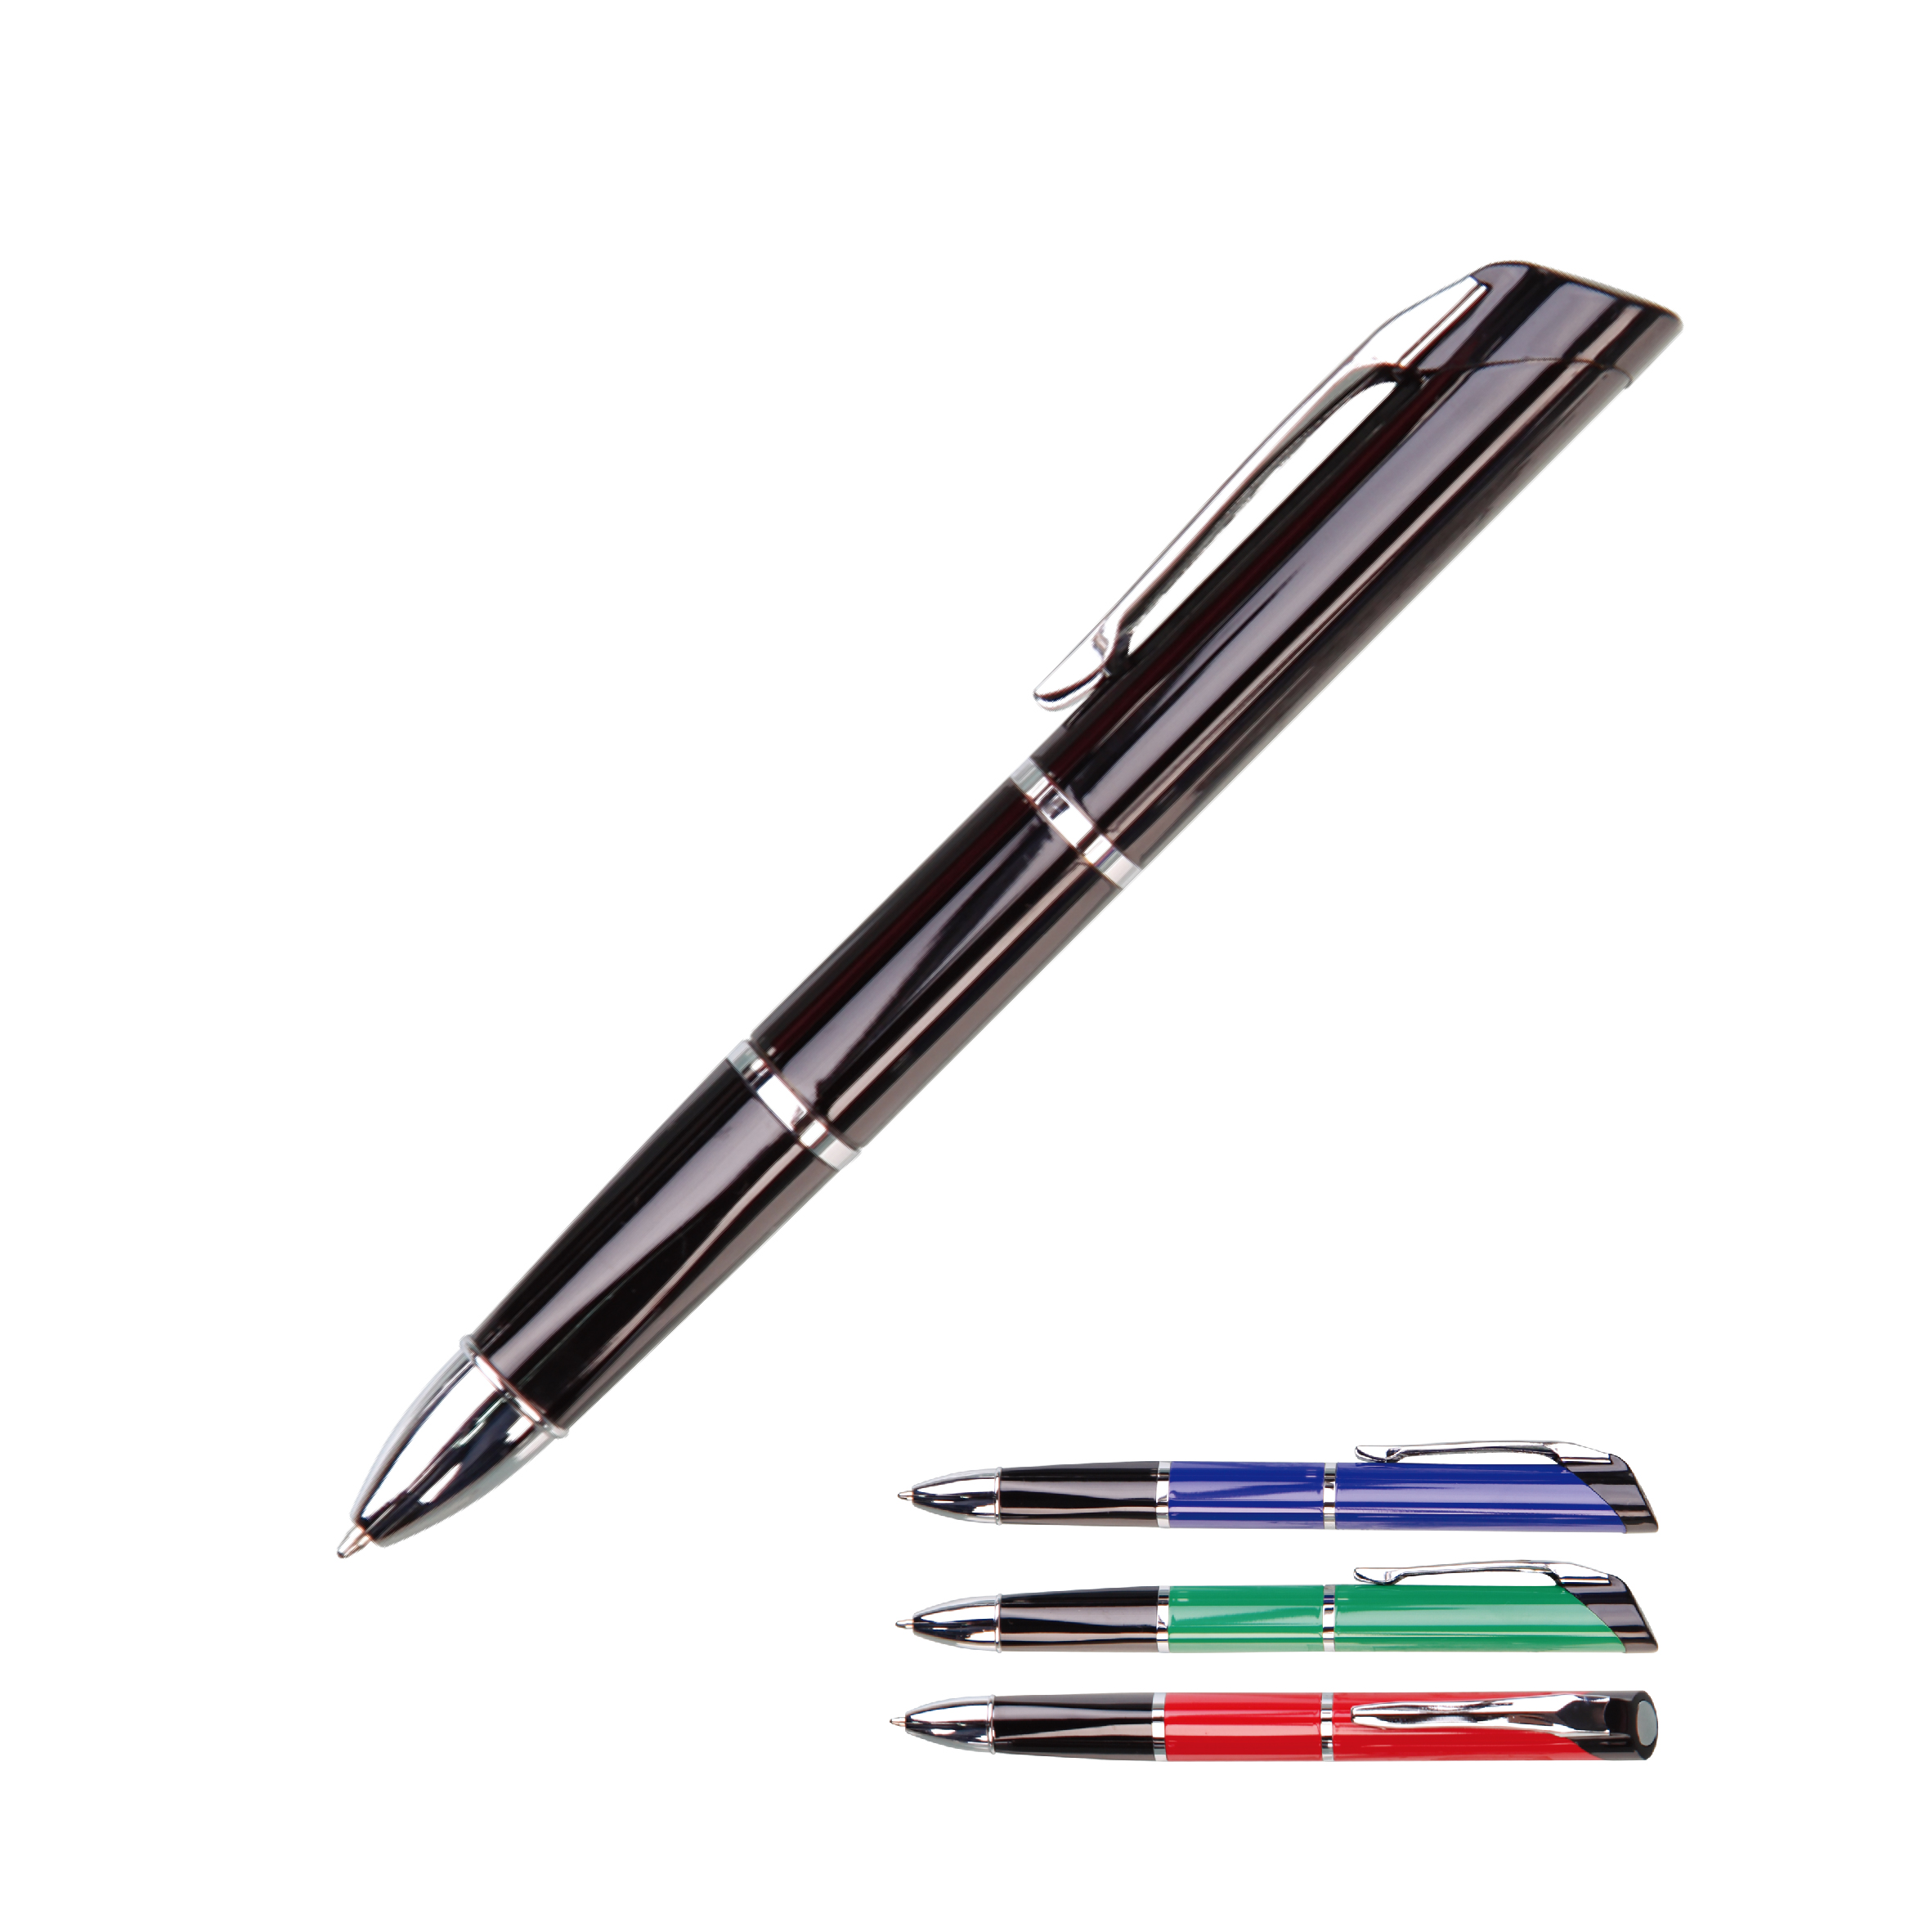 Drehbarer Kugelschreiber aus Metall, schwarz/blau/rote Tinte, dreieckiges Gehäuse